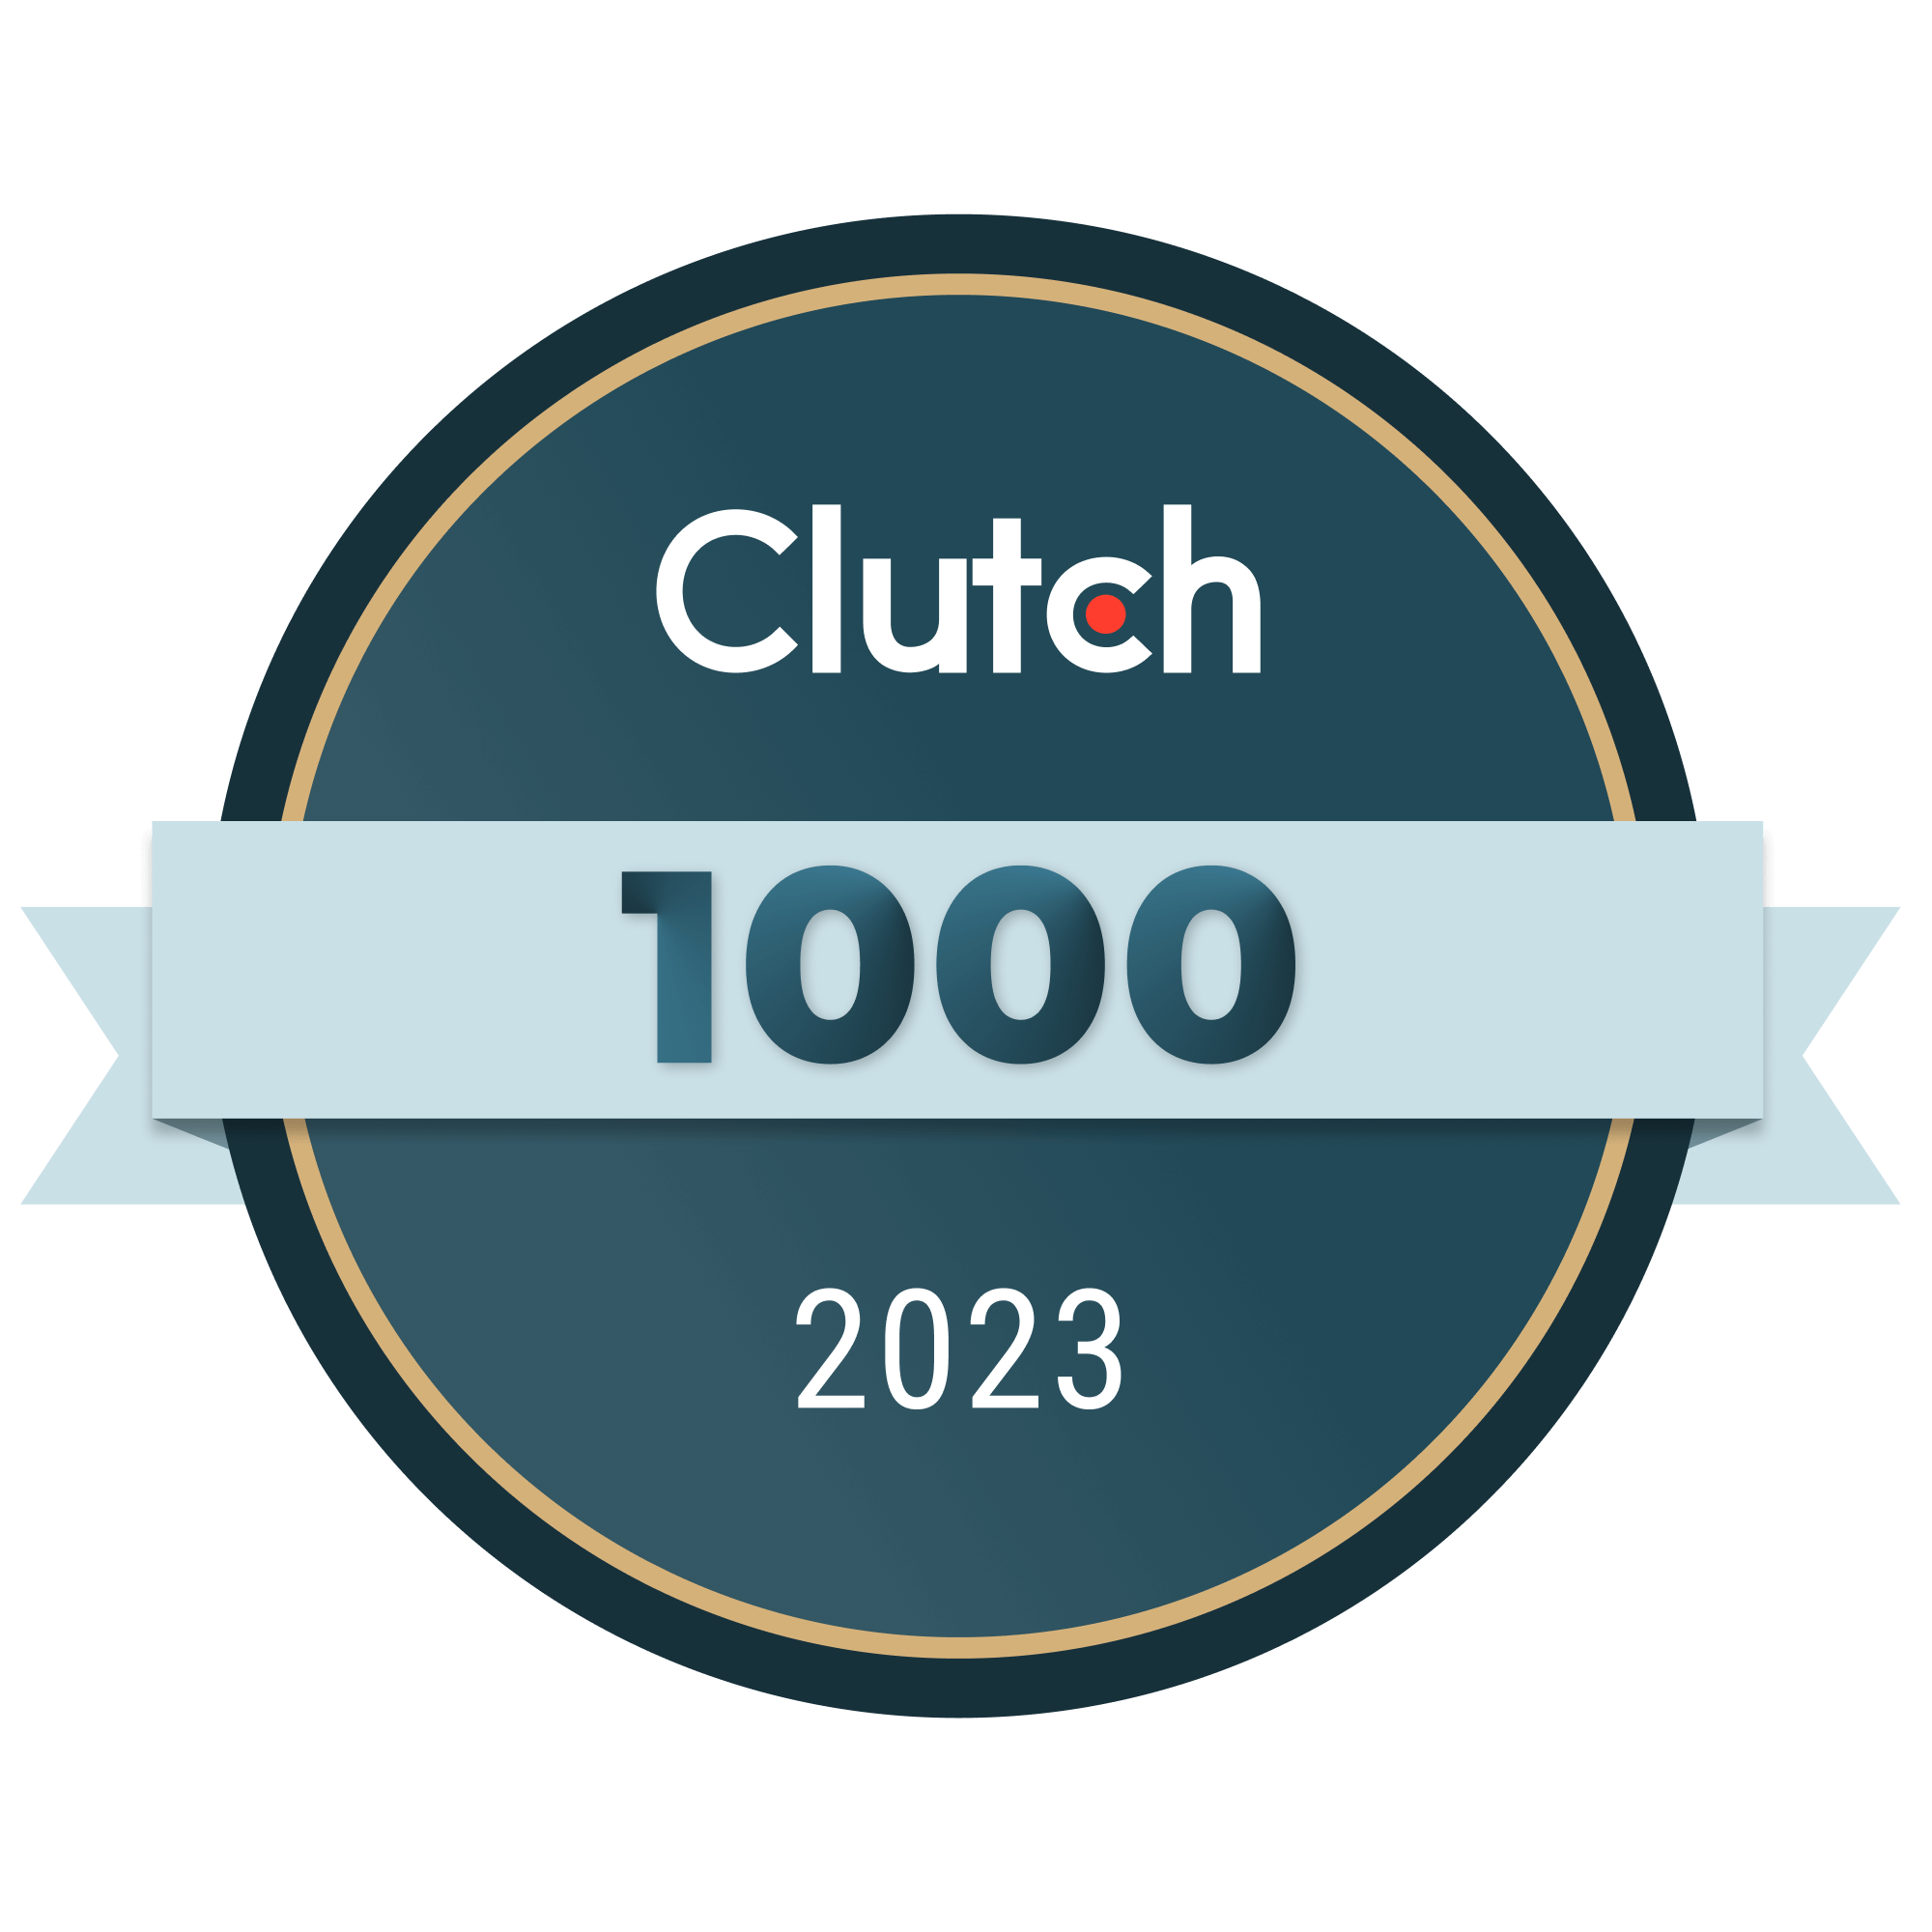 Clutch, 2023